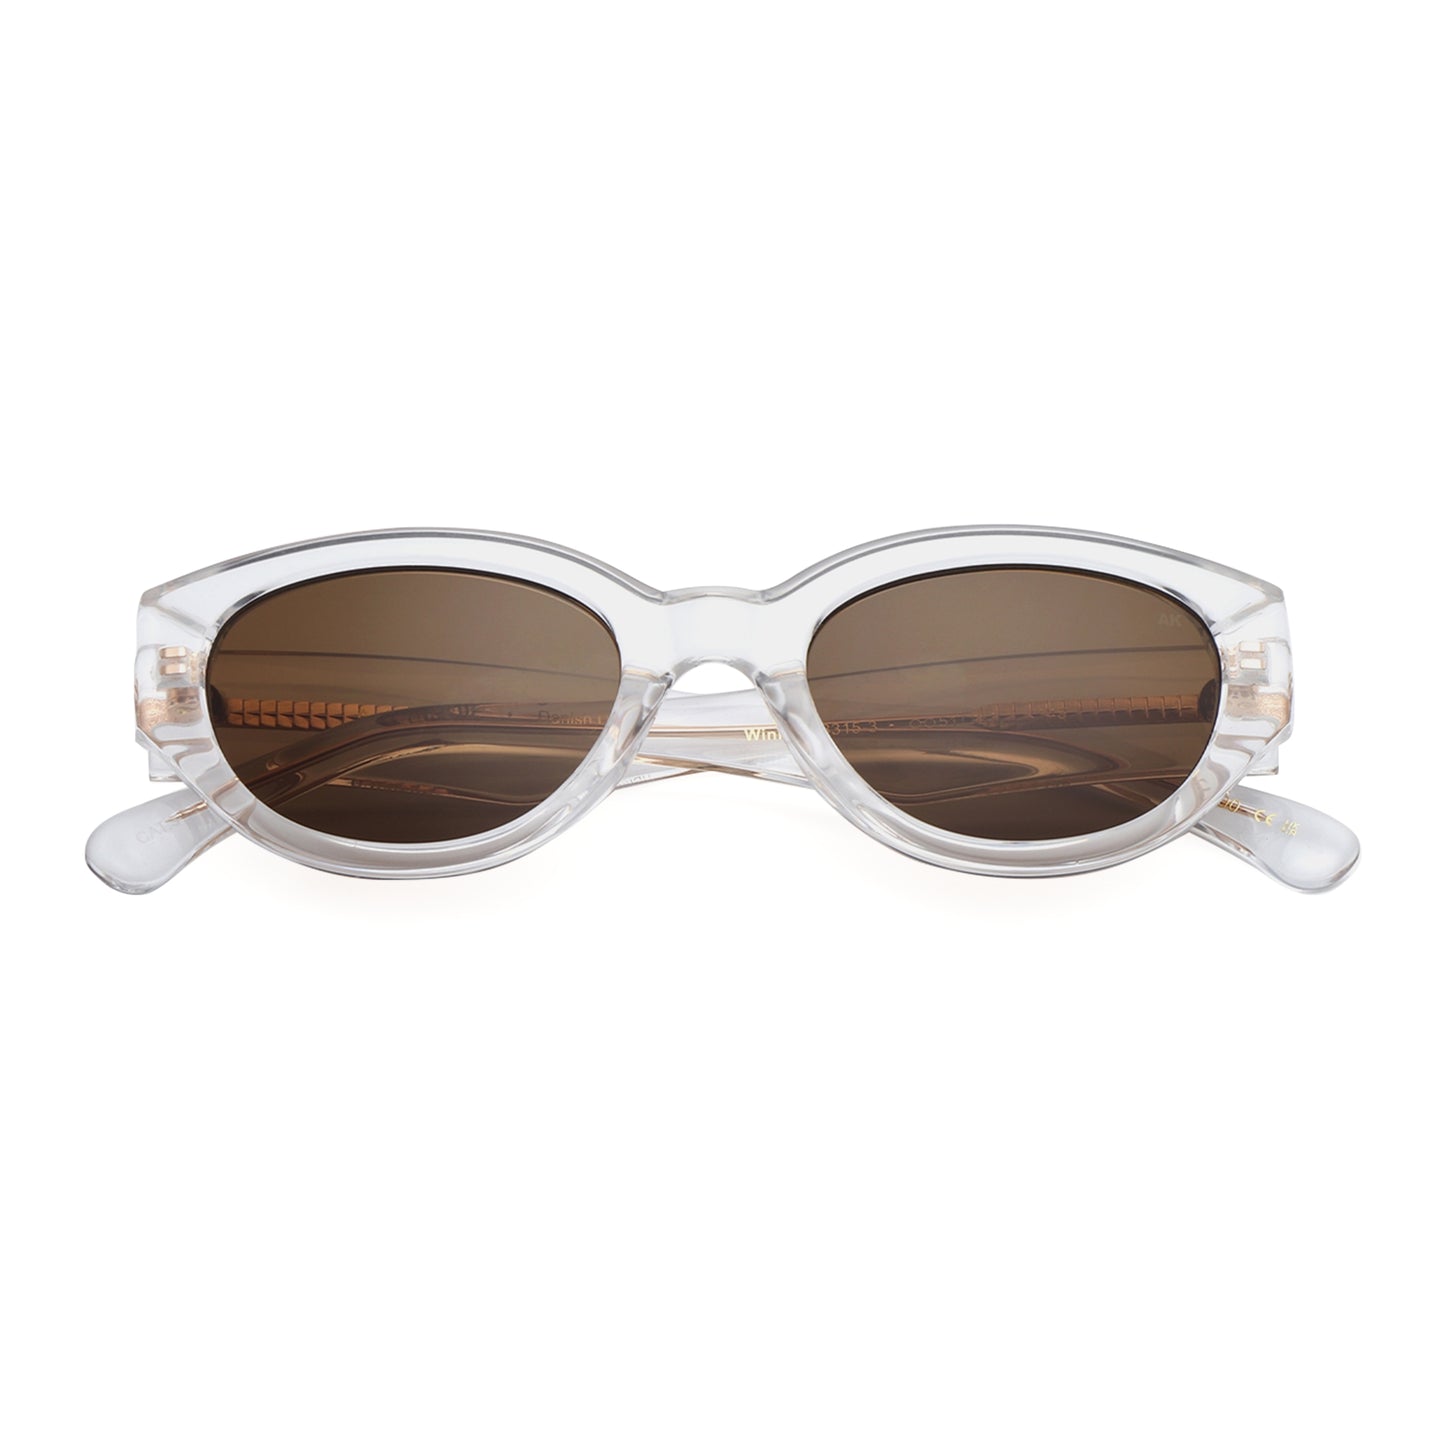 A.Kjaerbede Winnie Sunglasses in Crystal color